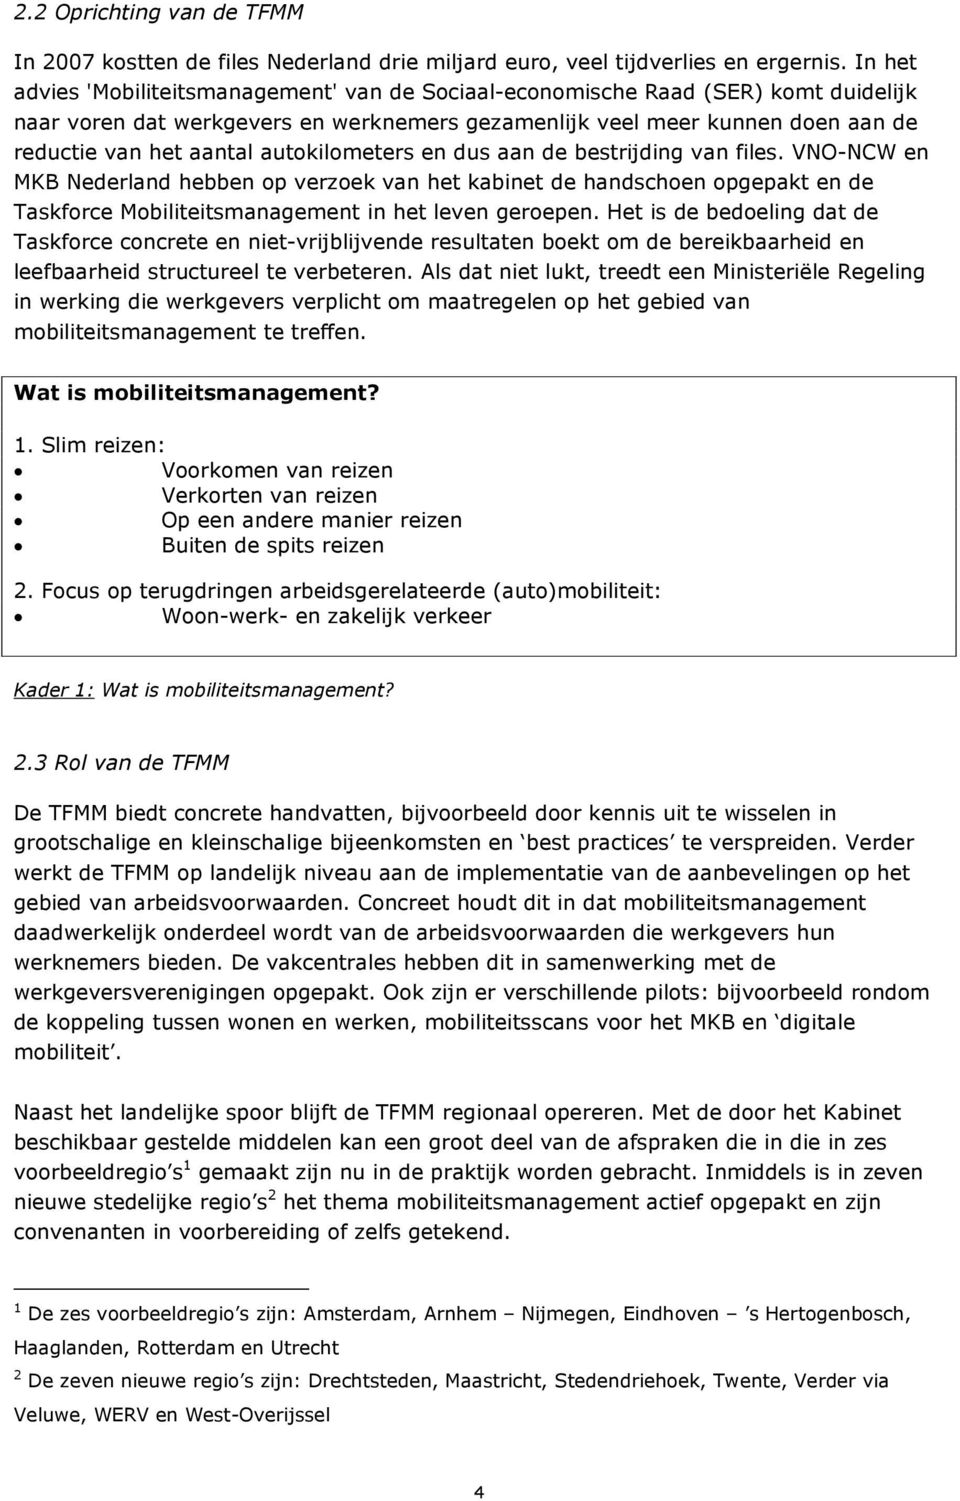 autokilometers en dus aan de bestrijding van files. VNO-NCW en MKB Nederland hebben op verzoek van het kabinet de handschoen opgepakt en de Taskforce Mobiliteitsmanagement in het leven geroepen.